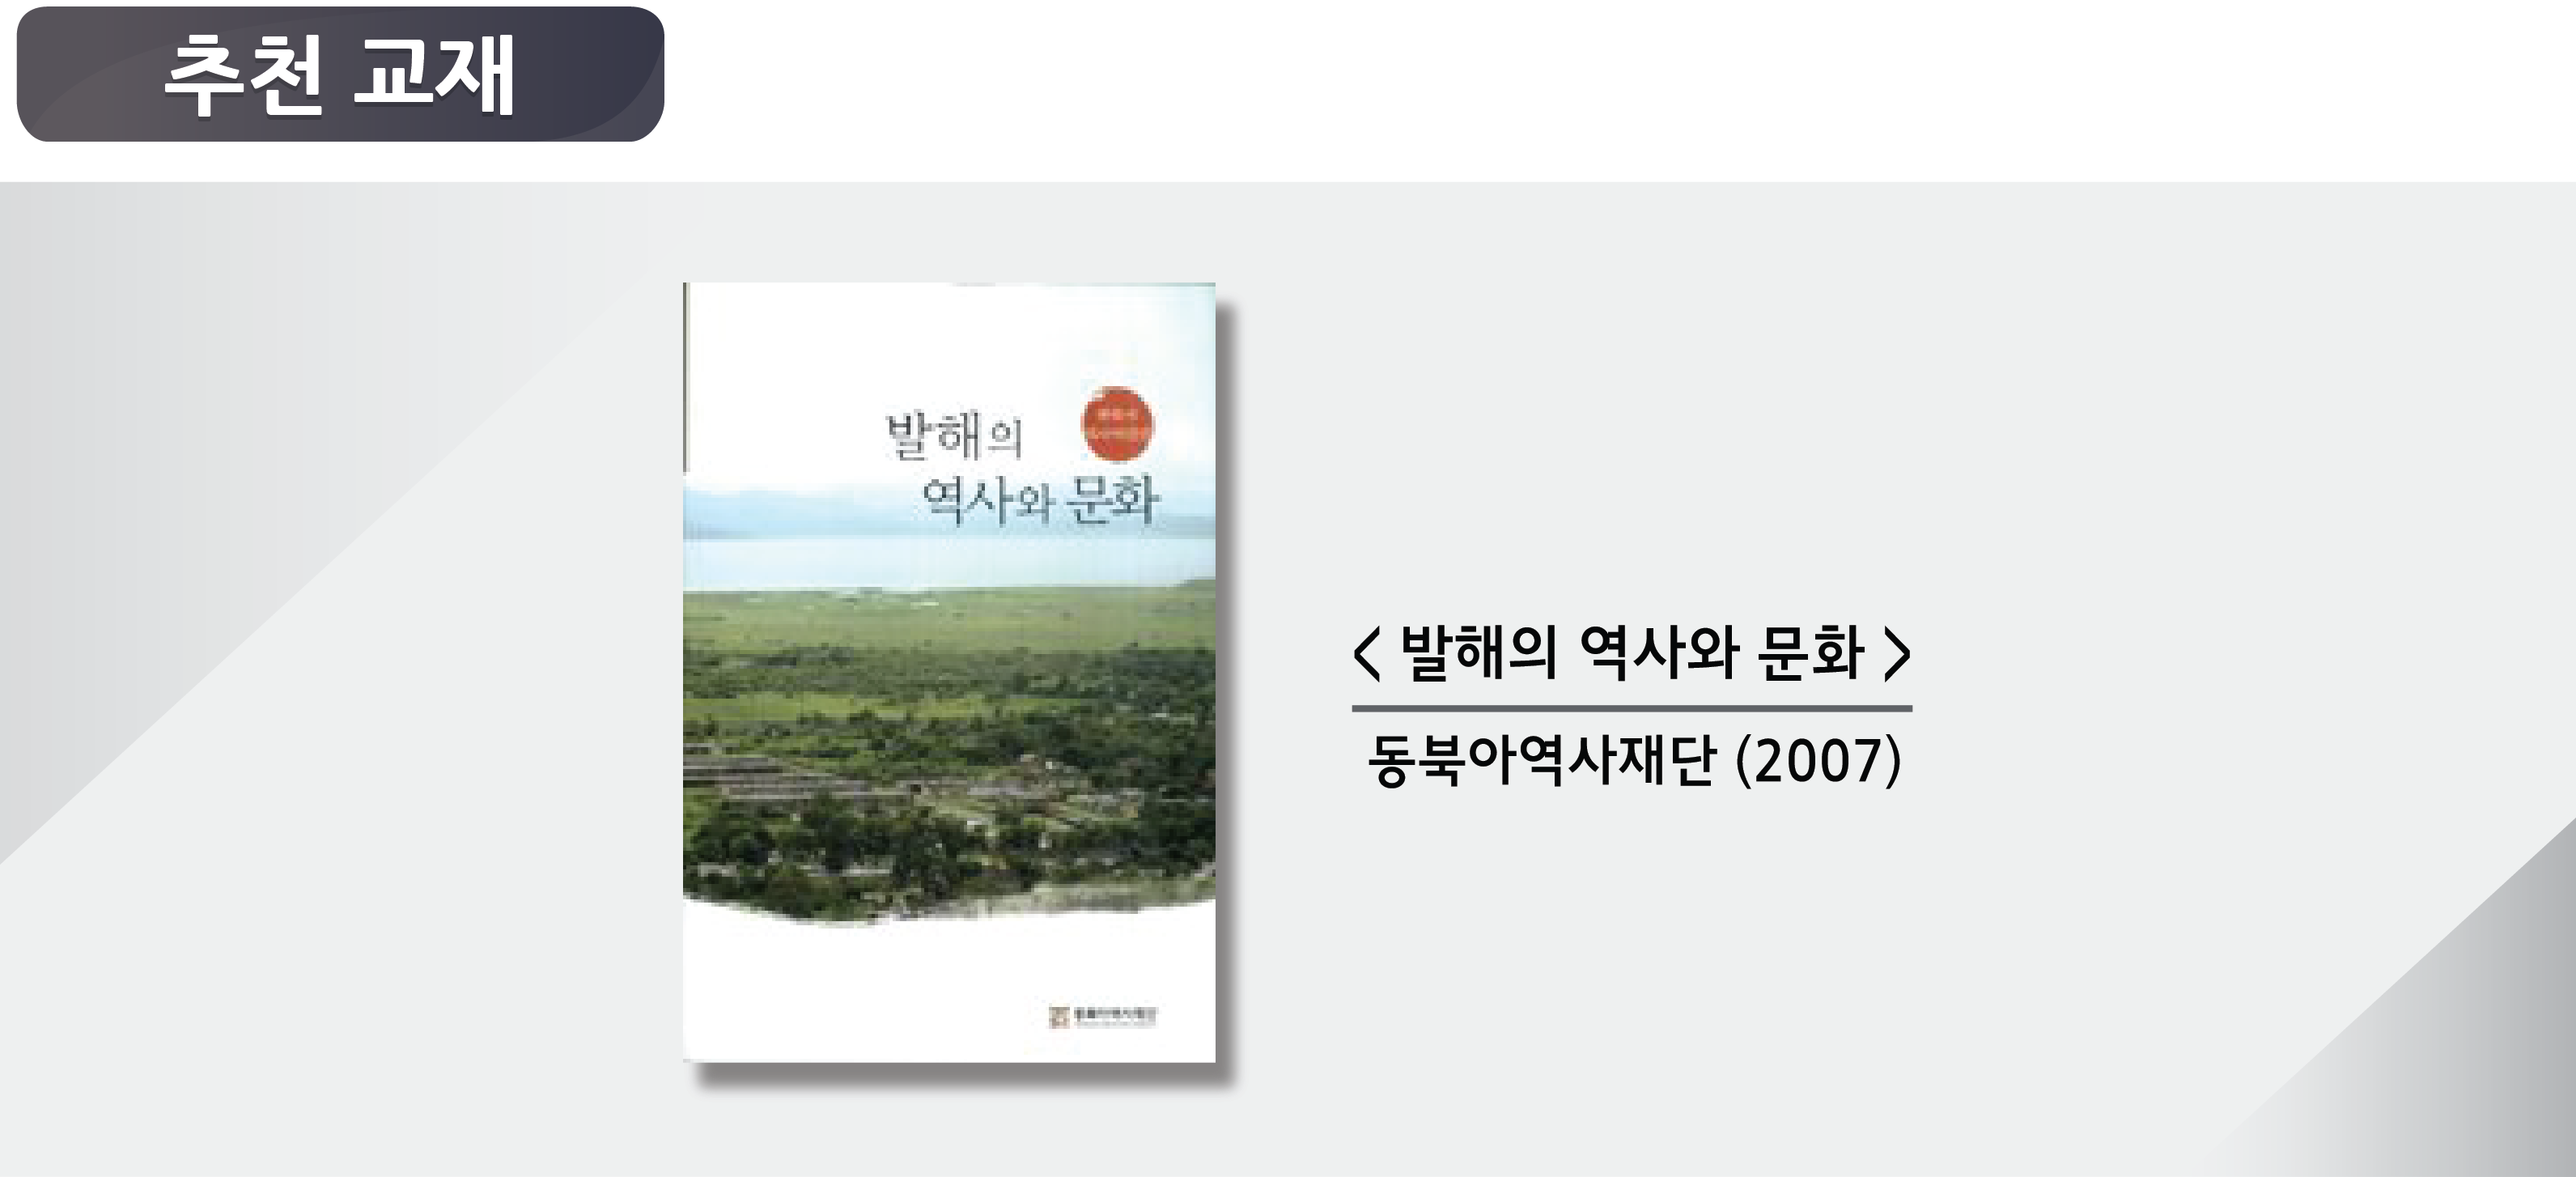 발해의 역사와 문화, 동북아역사재단(2007)